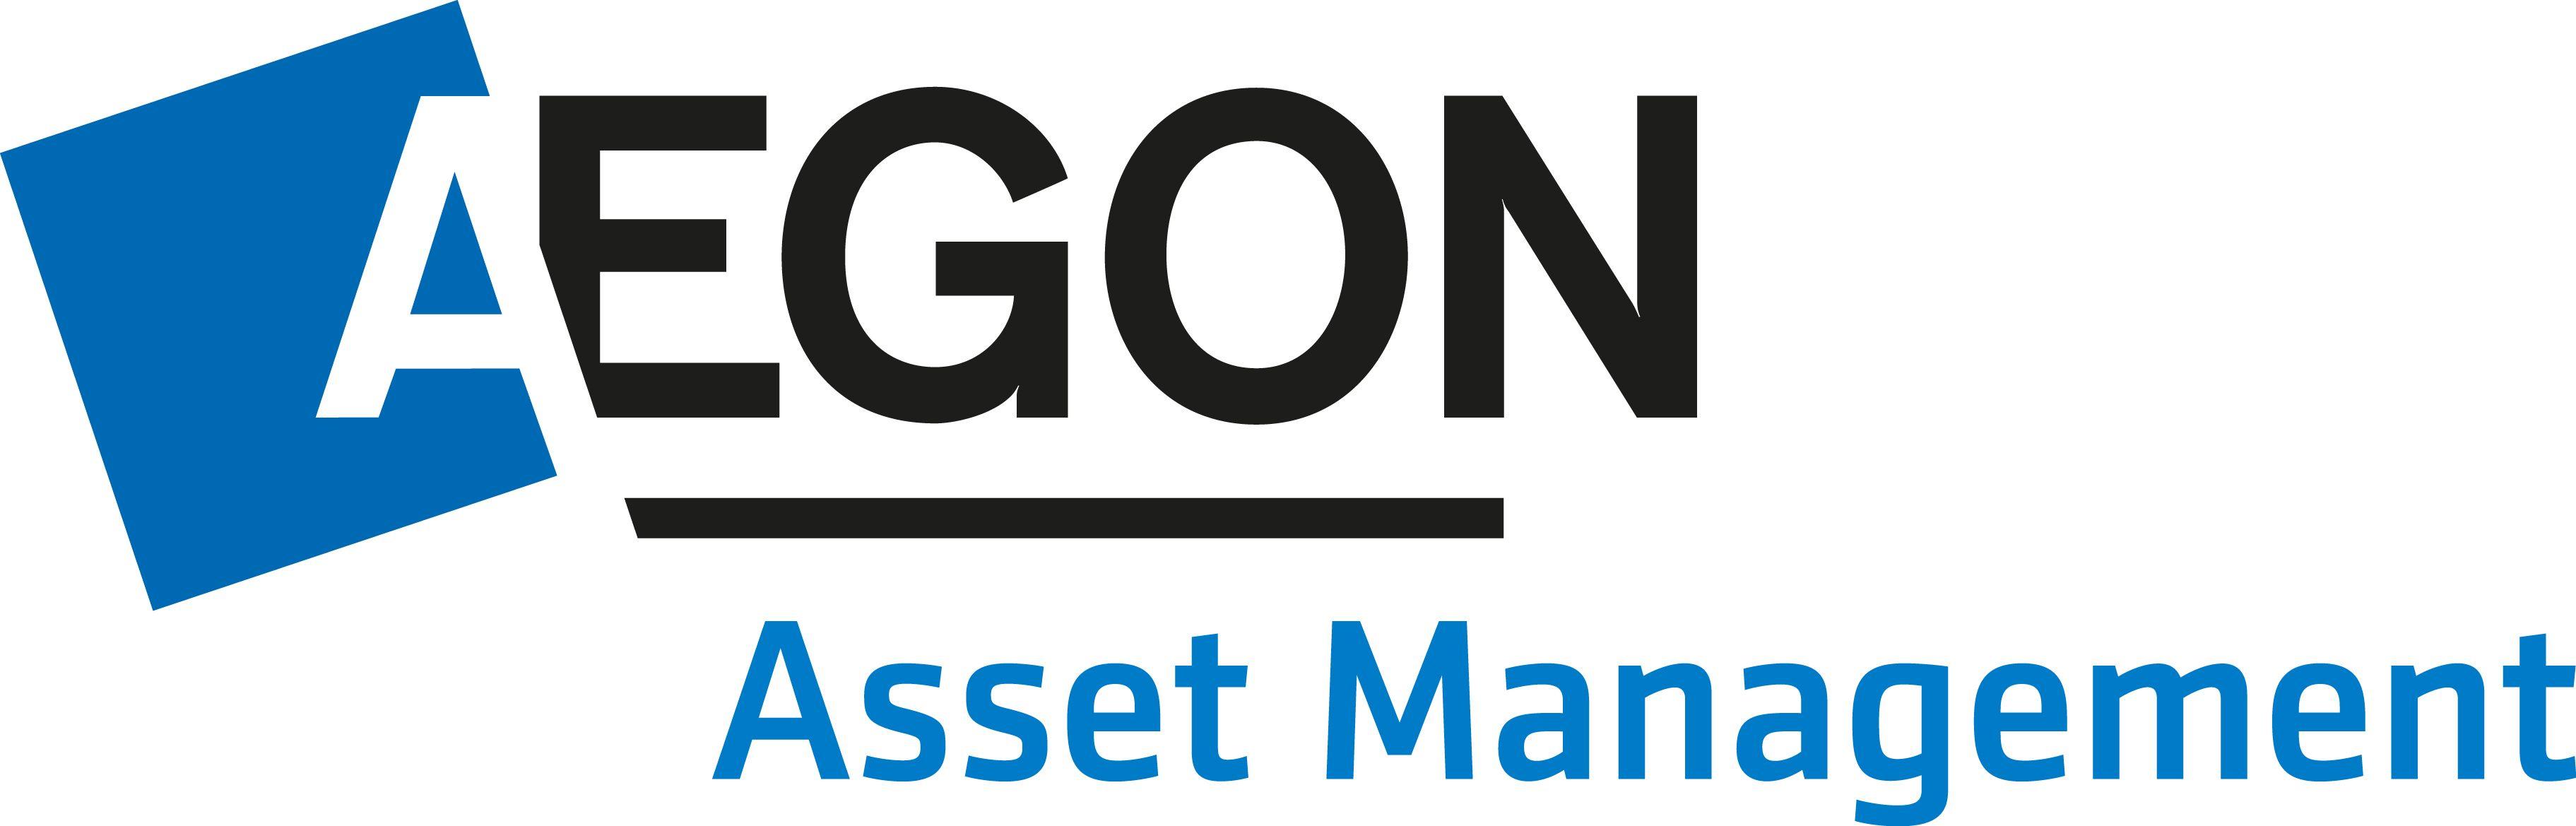 Management Logo - Aegon Asset Management Logo